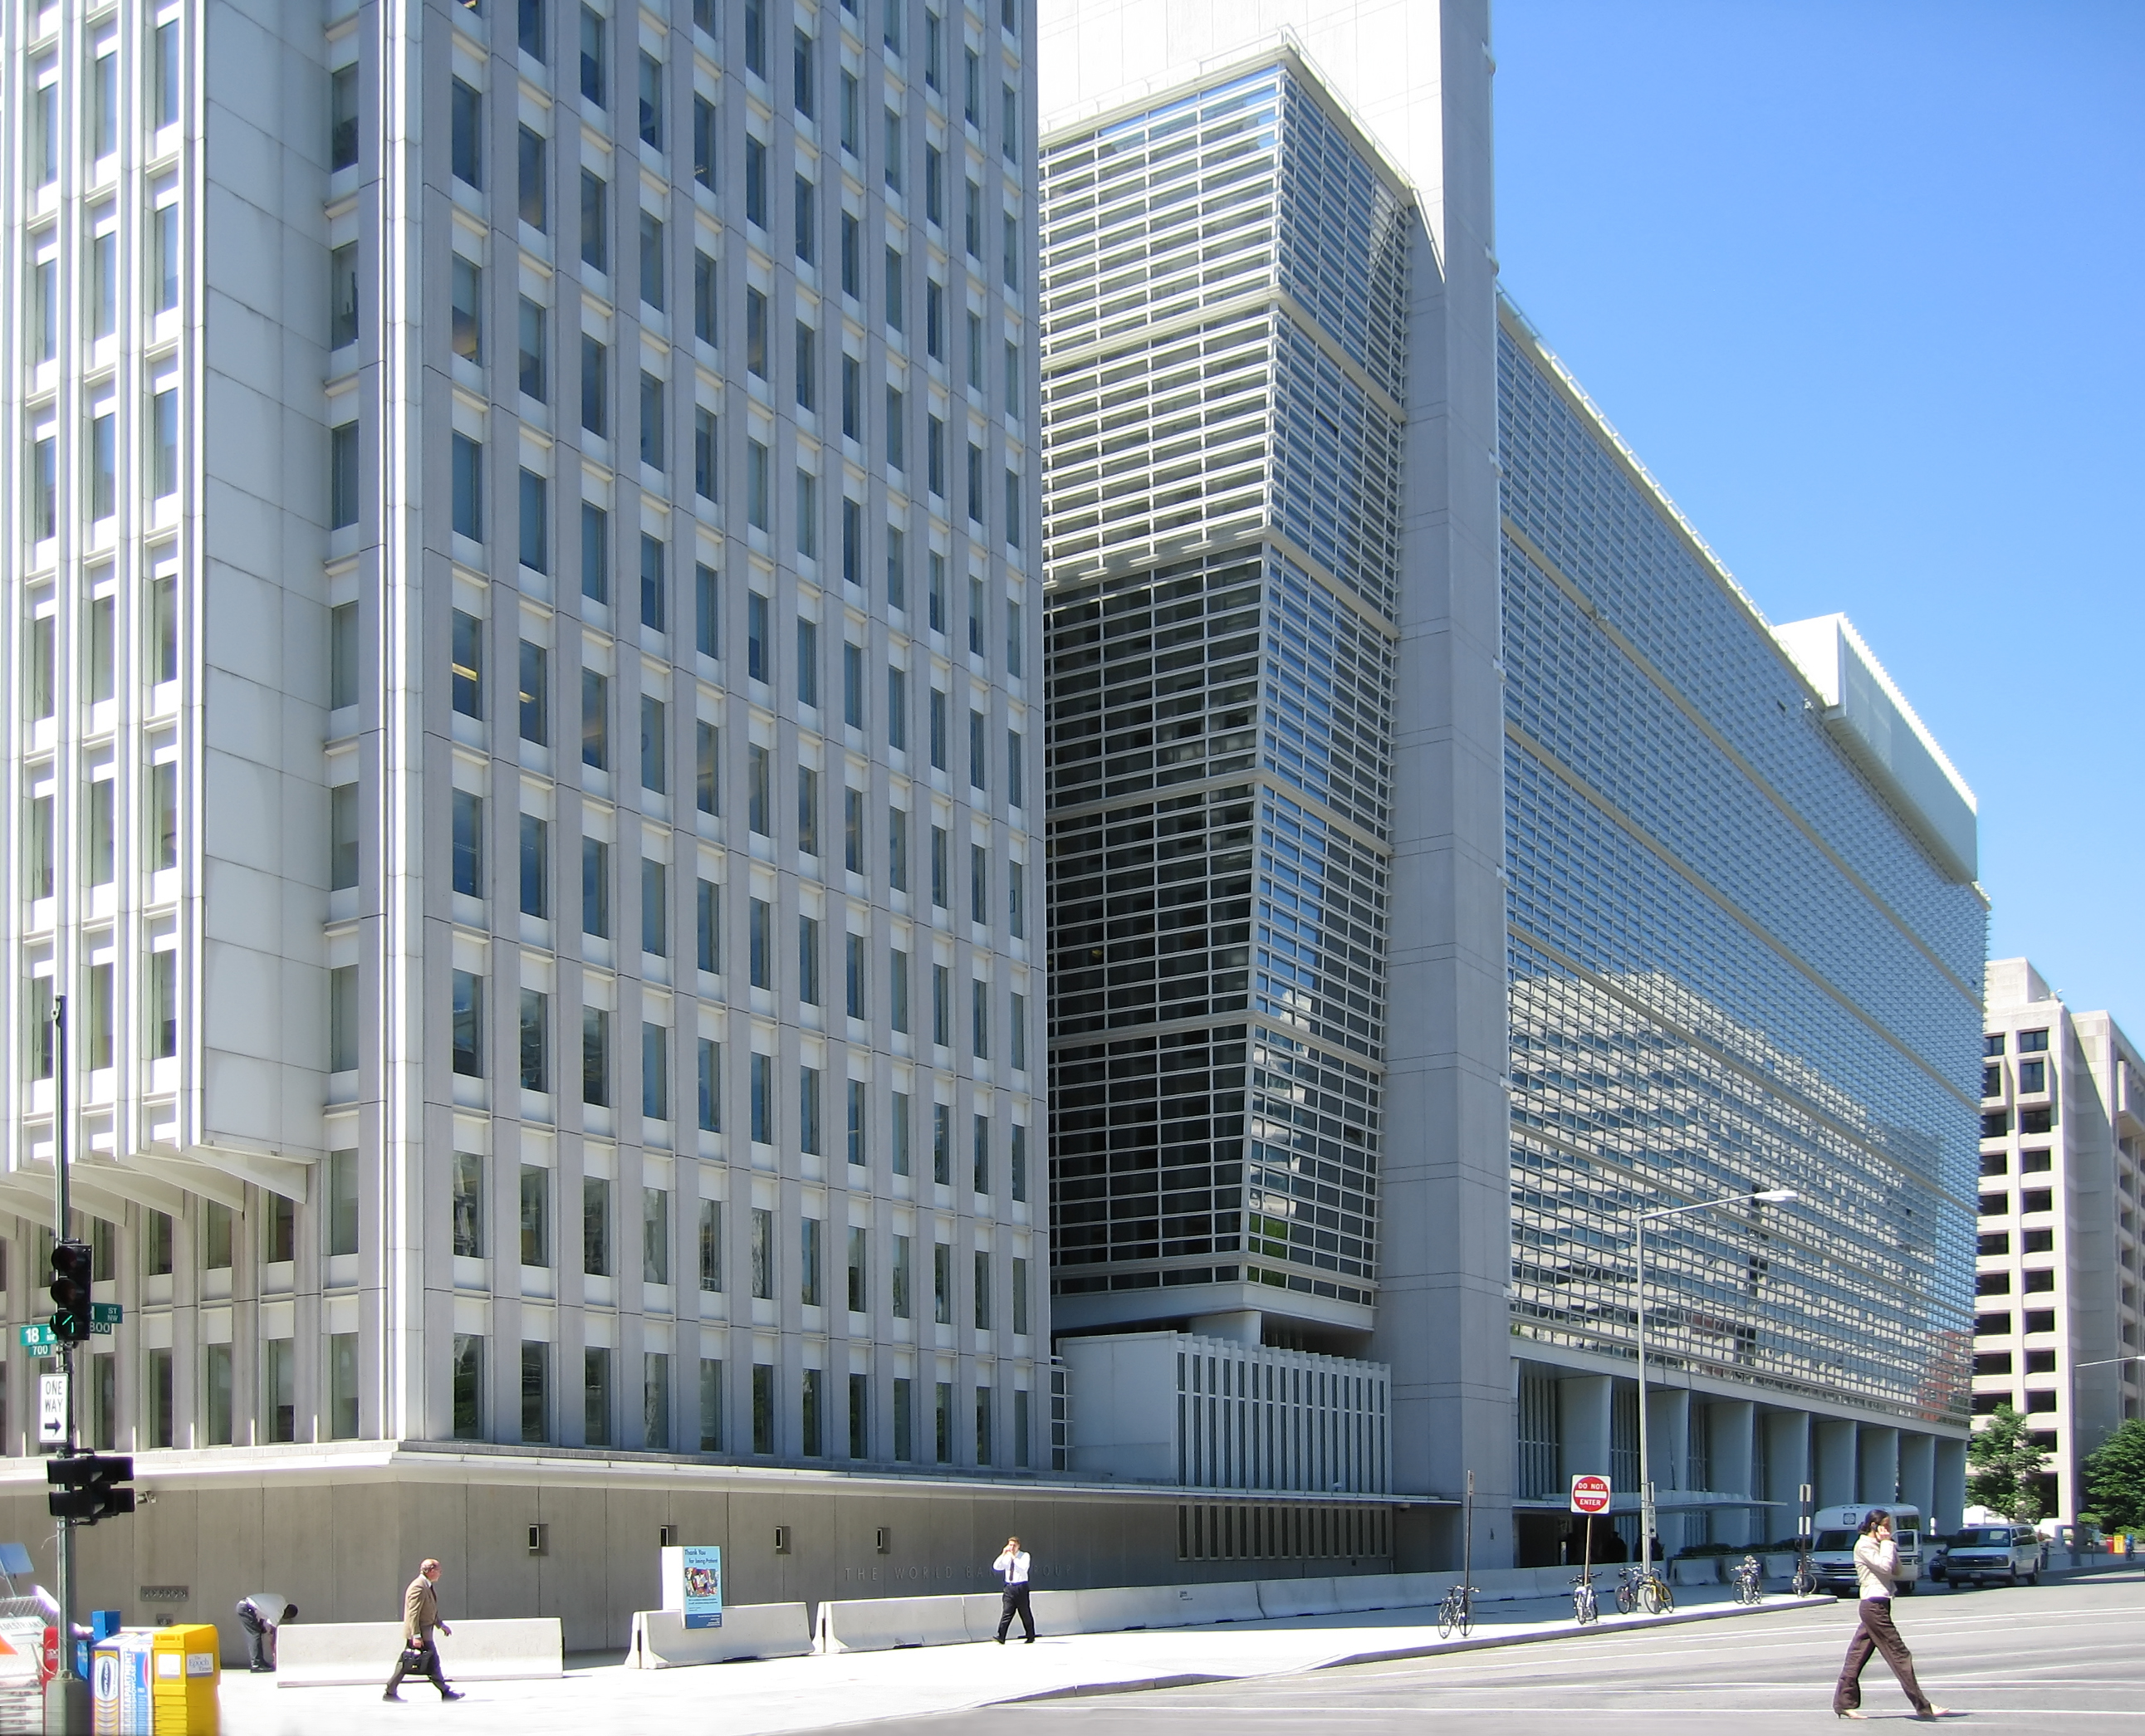 World Bank Building at Washington